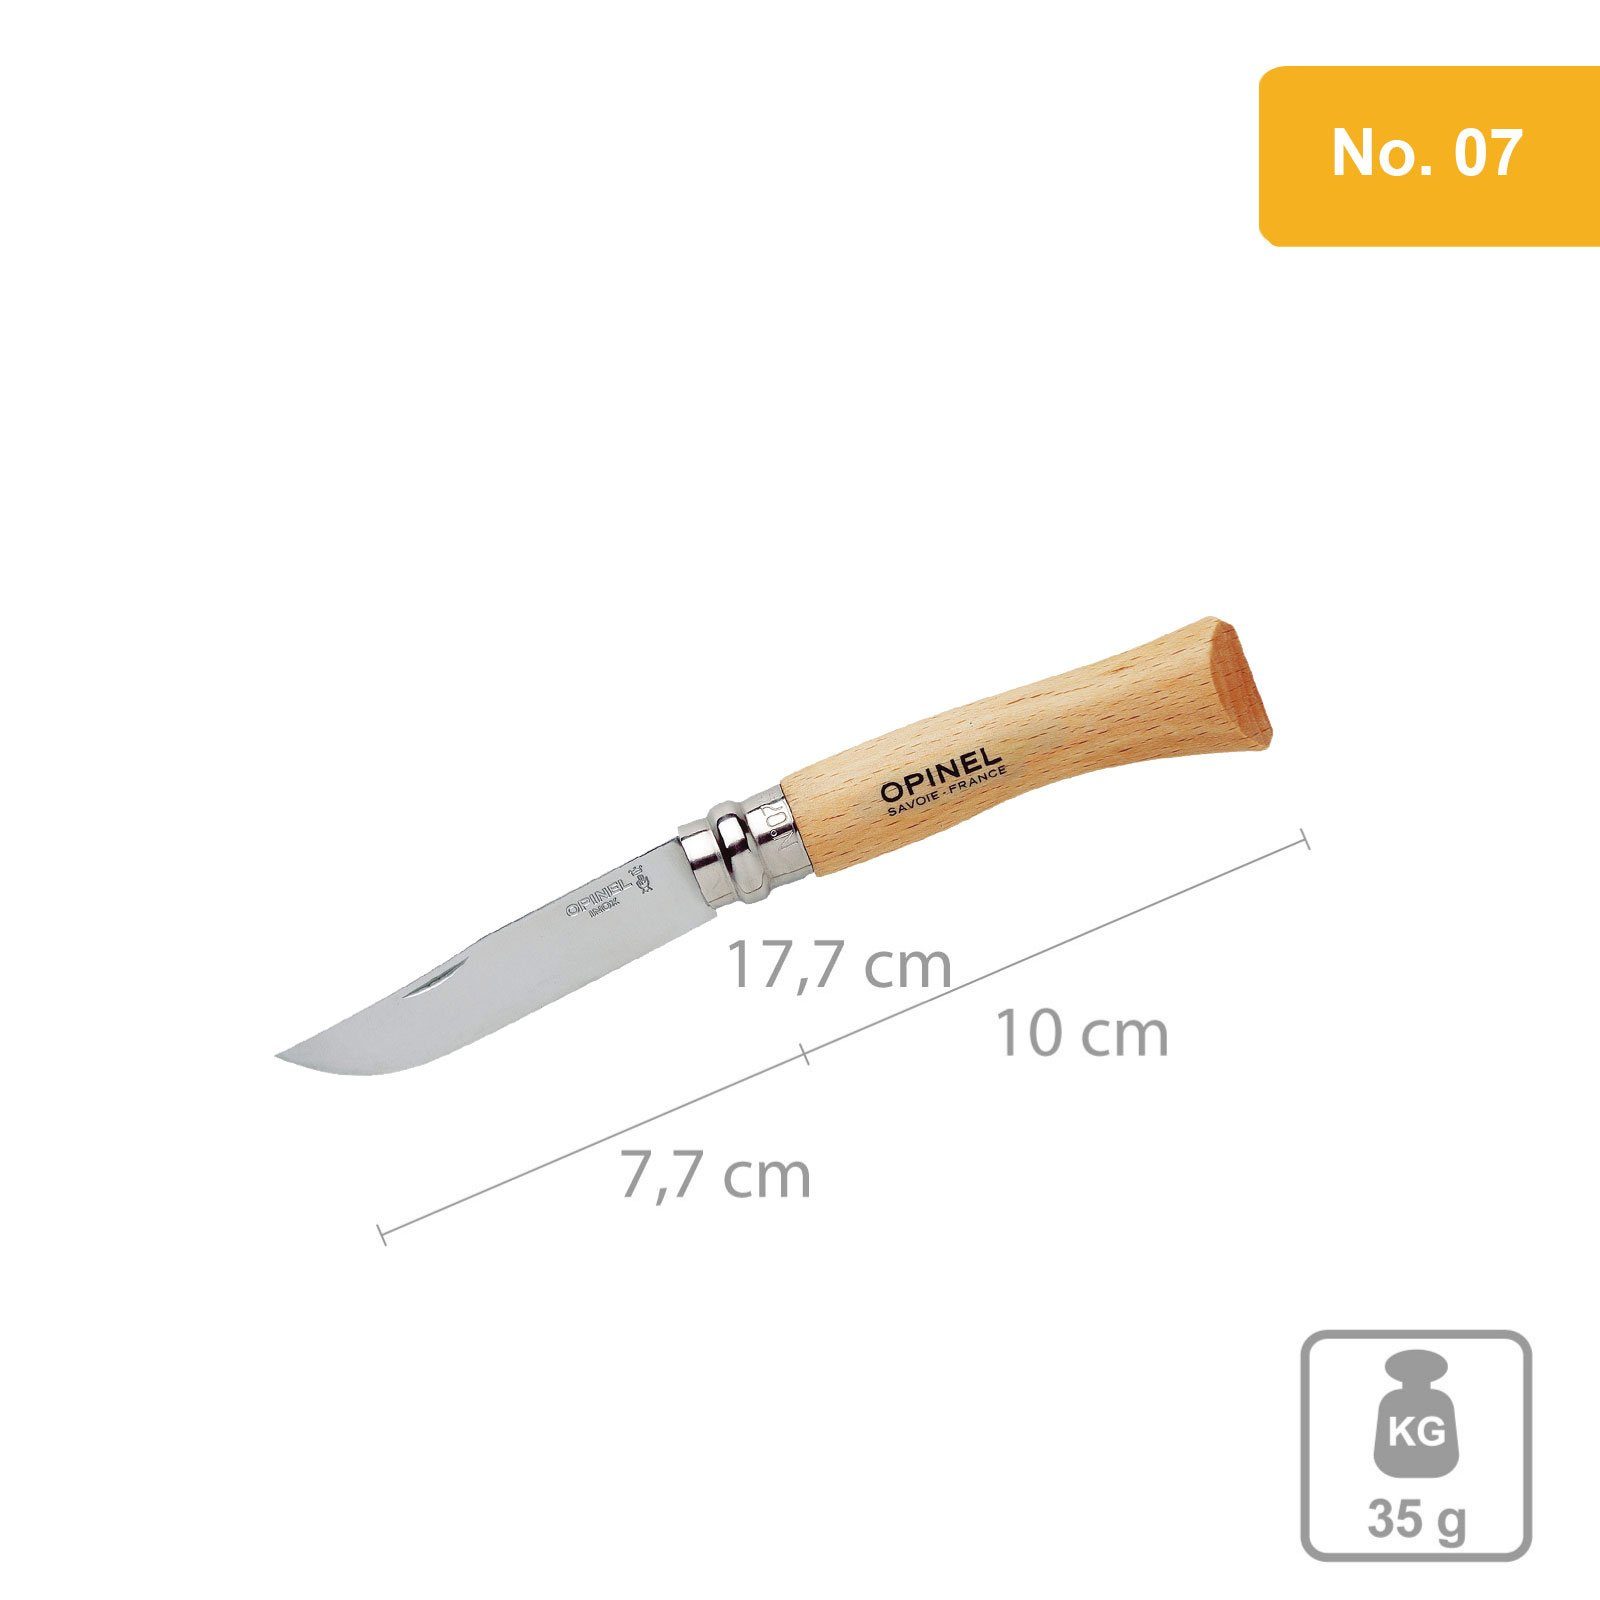 Opinel Taschenmesser Ножі Carbon & INOX Stahl No 02, Bis No 12 Taschenmesser Klappmesser